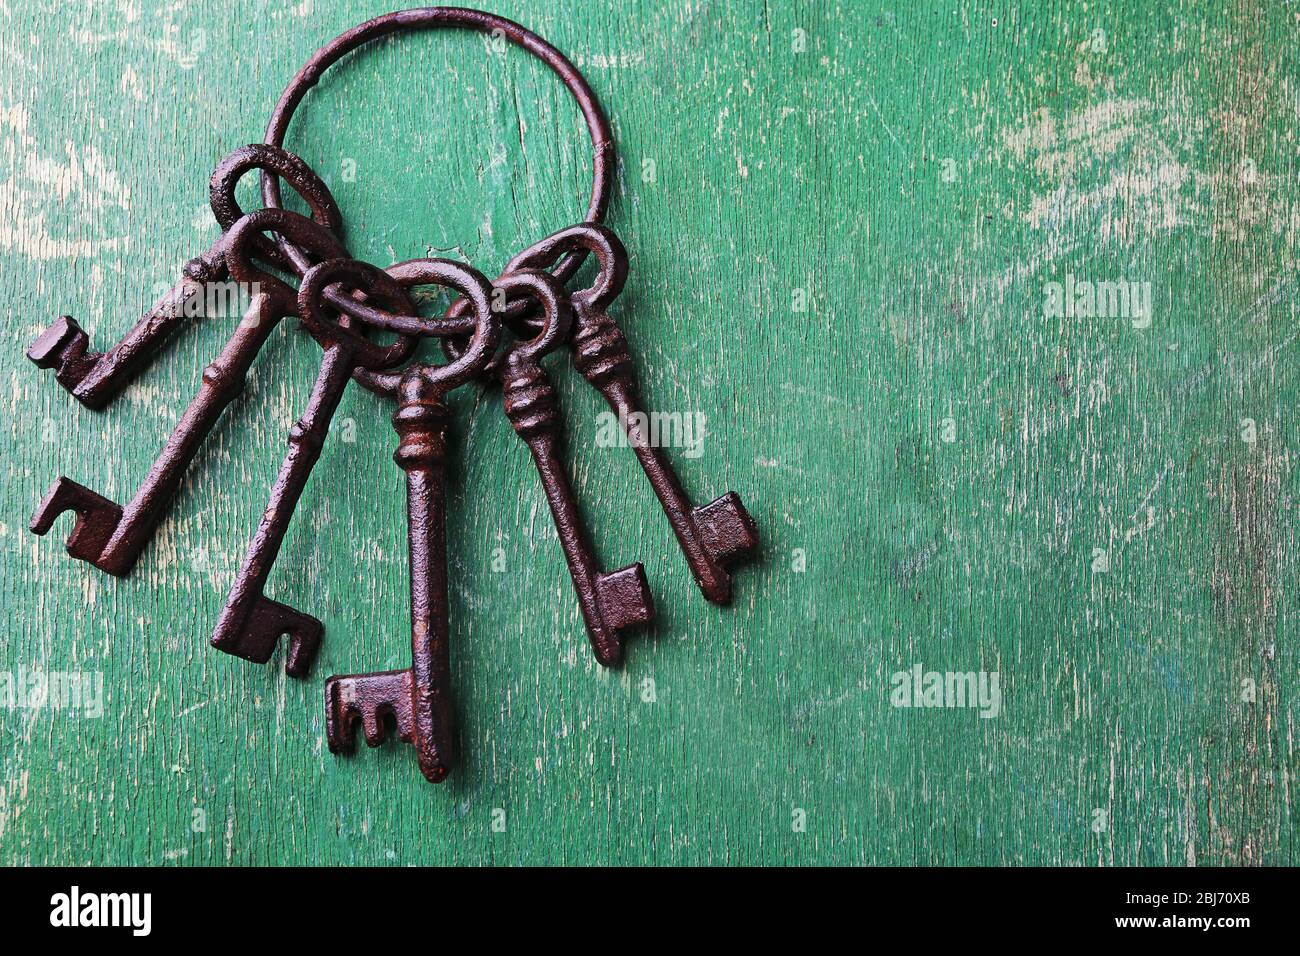 Ein Haufen alter Schlüssel auf grün verkratztem Holzhintergrund, Nahaufnahme Stockfoto